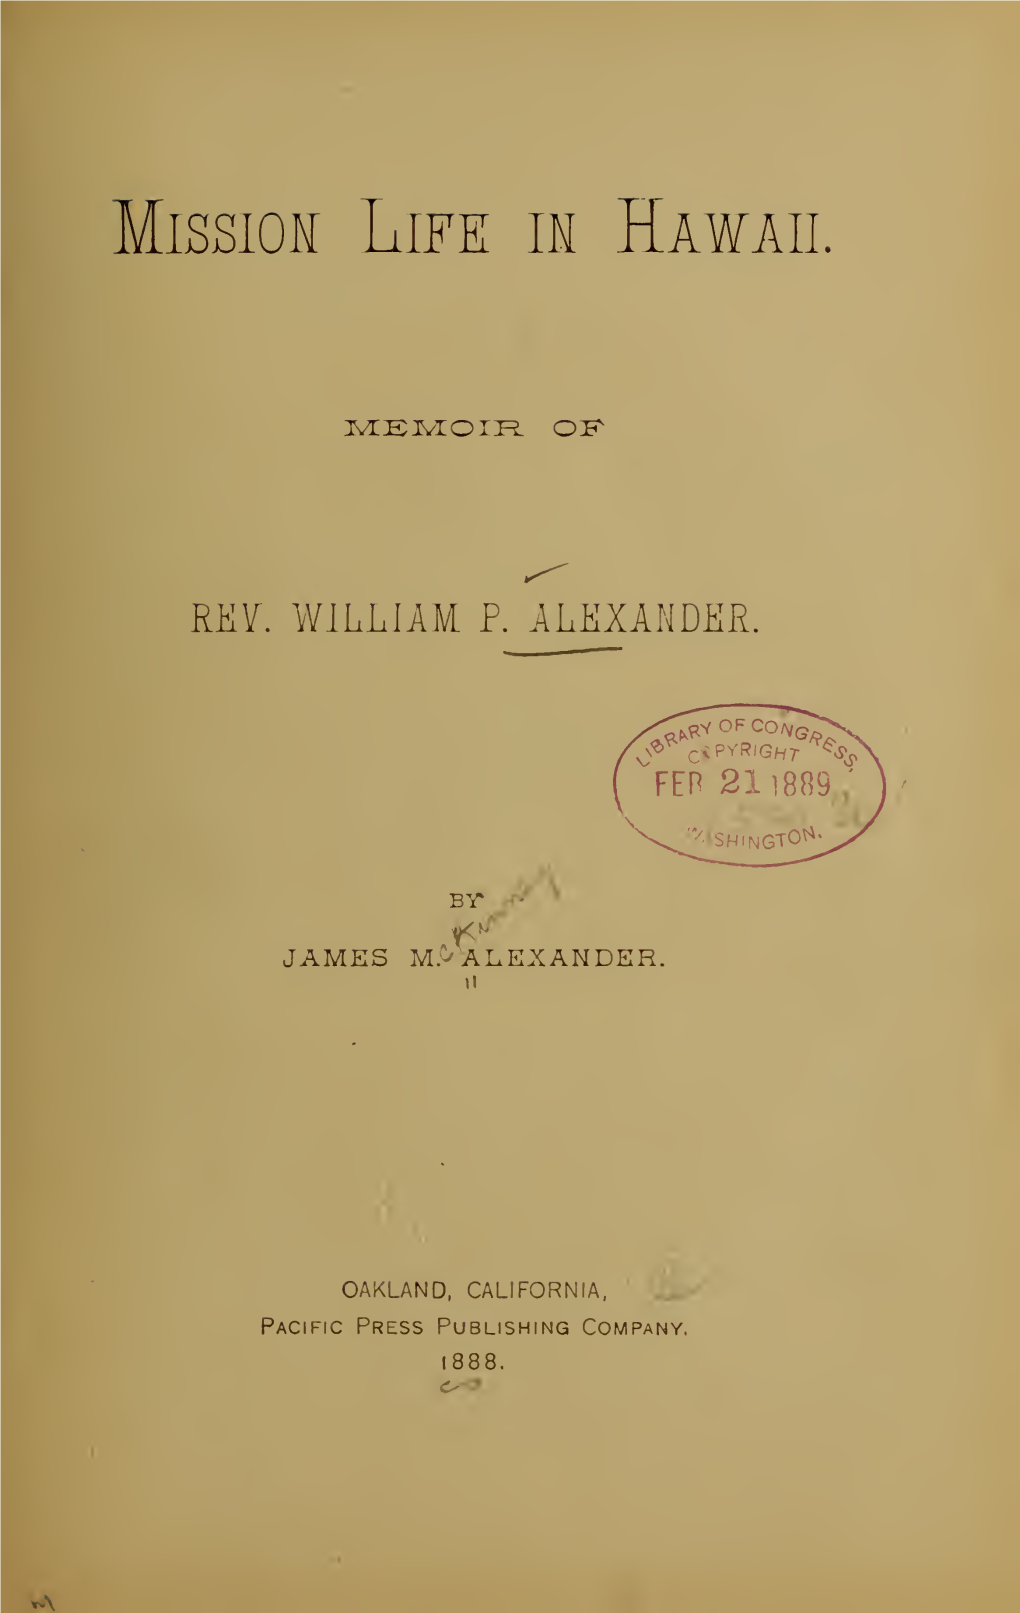 Memoir of Rev. William P. Alexander